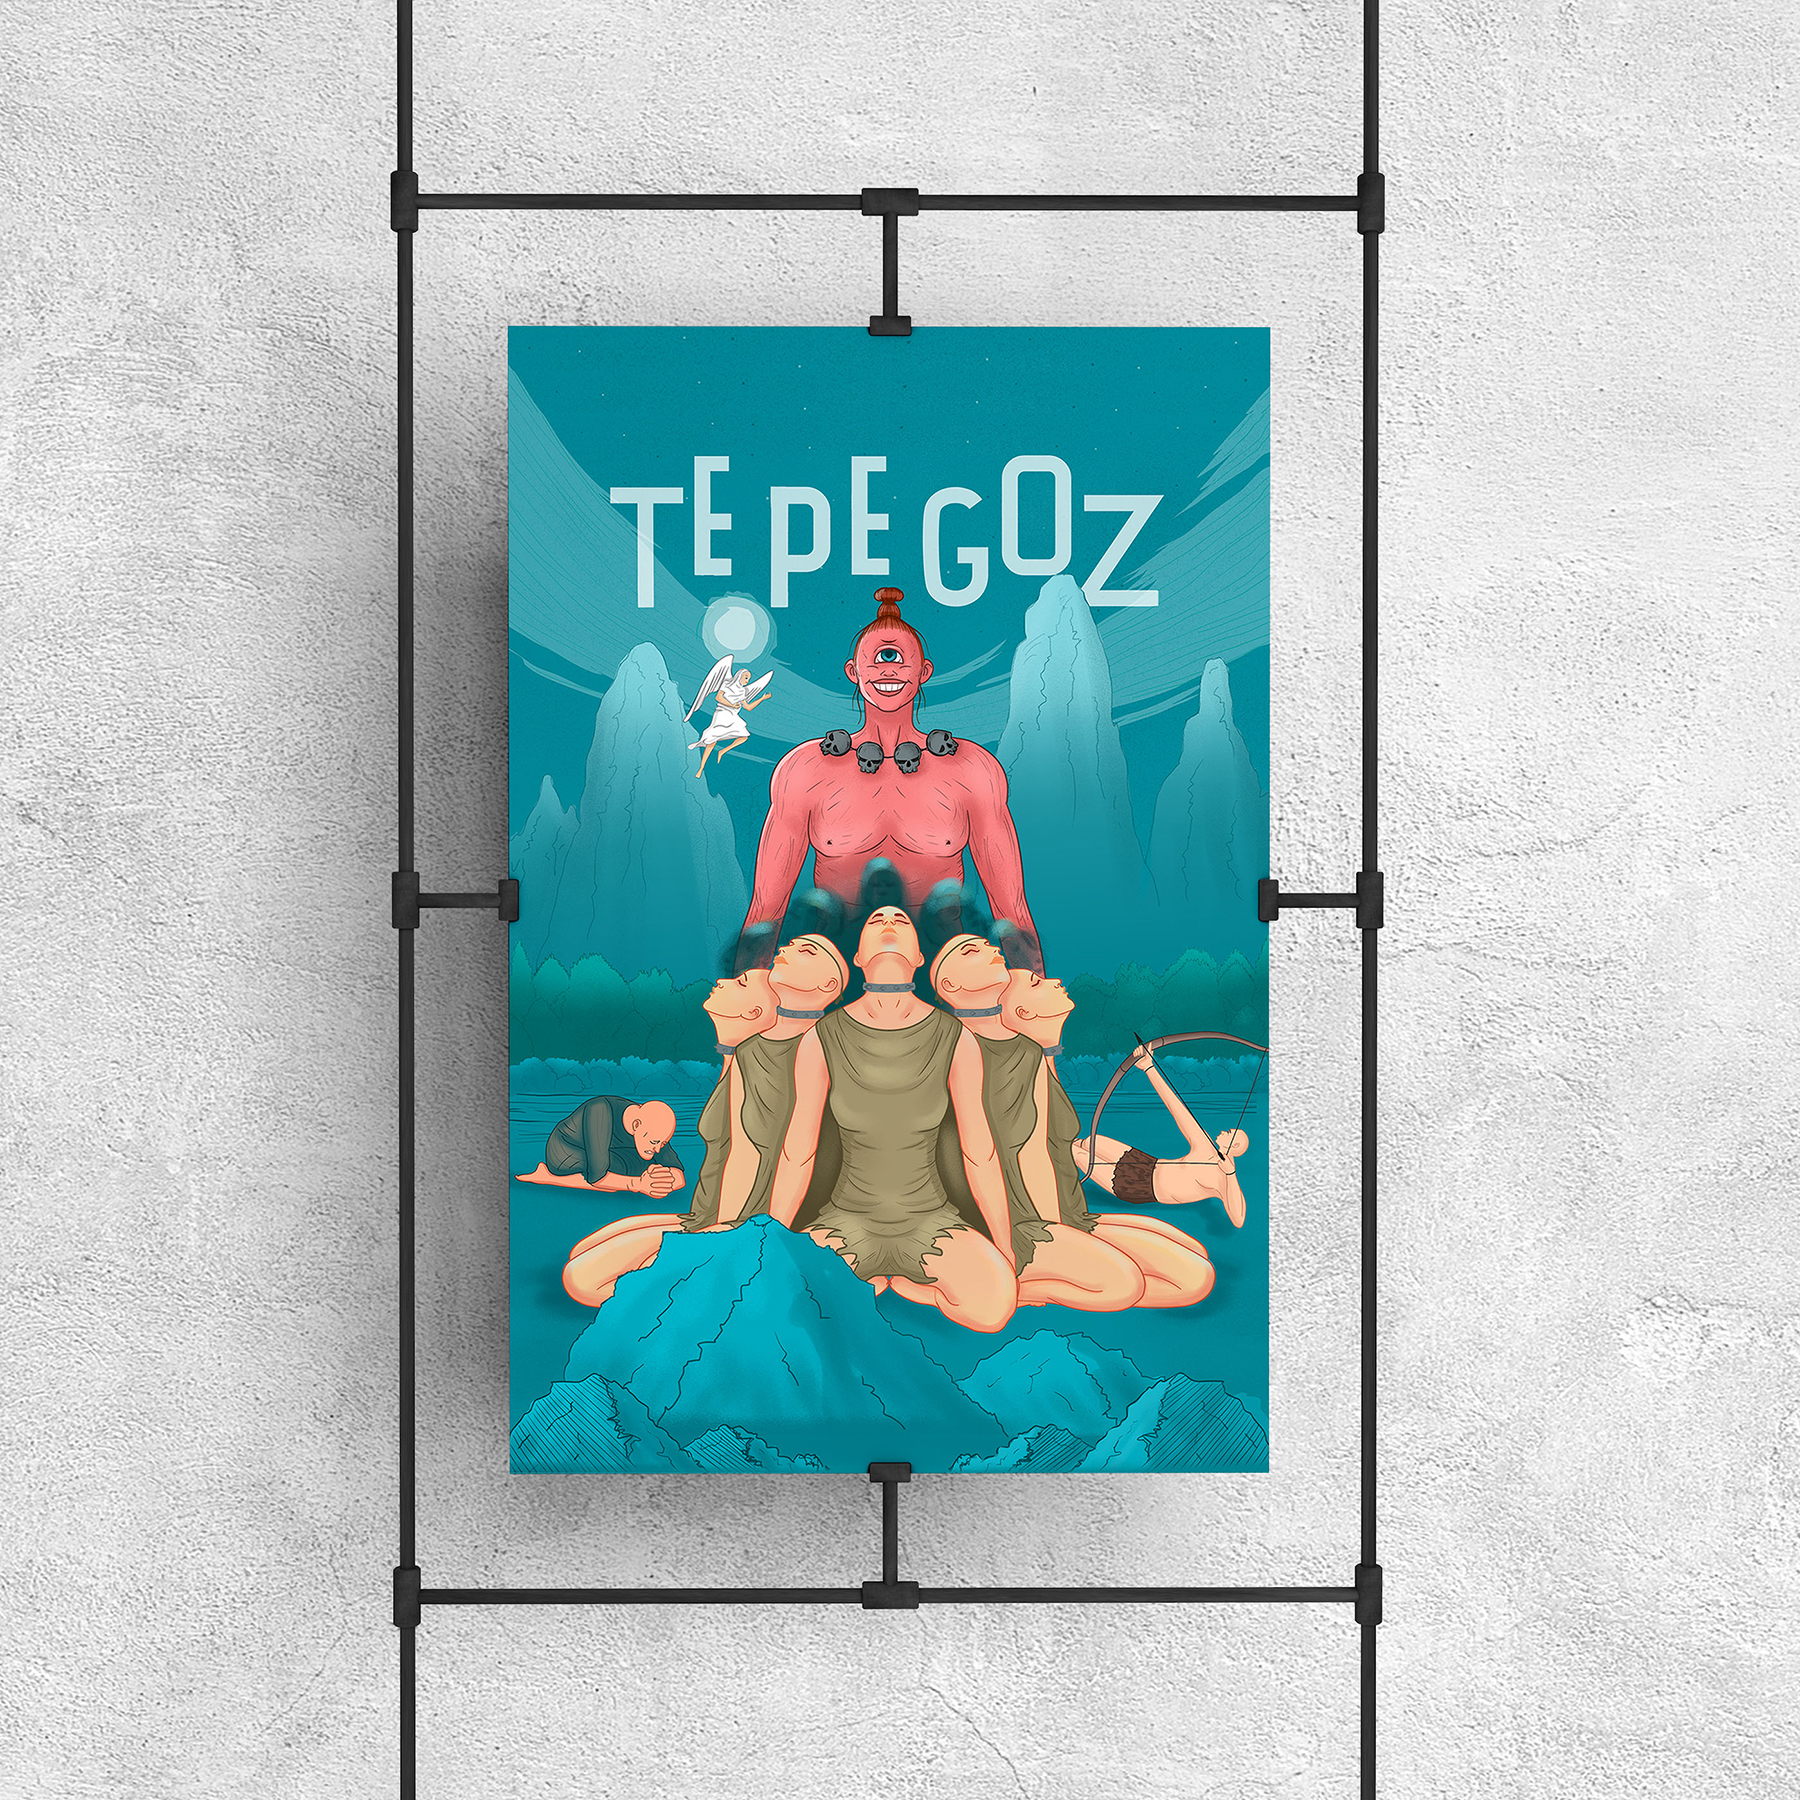 Tepegoz myth poster